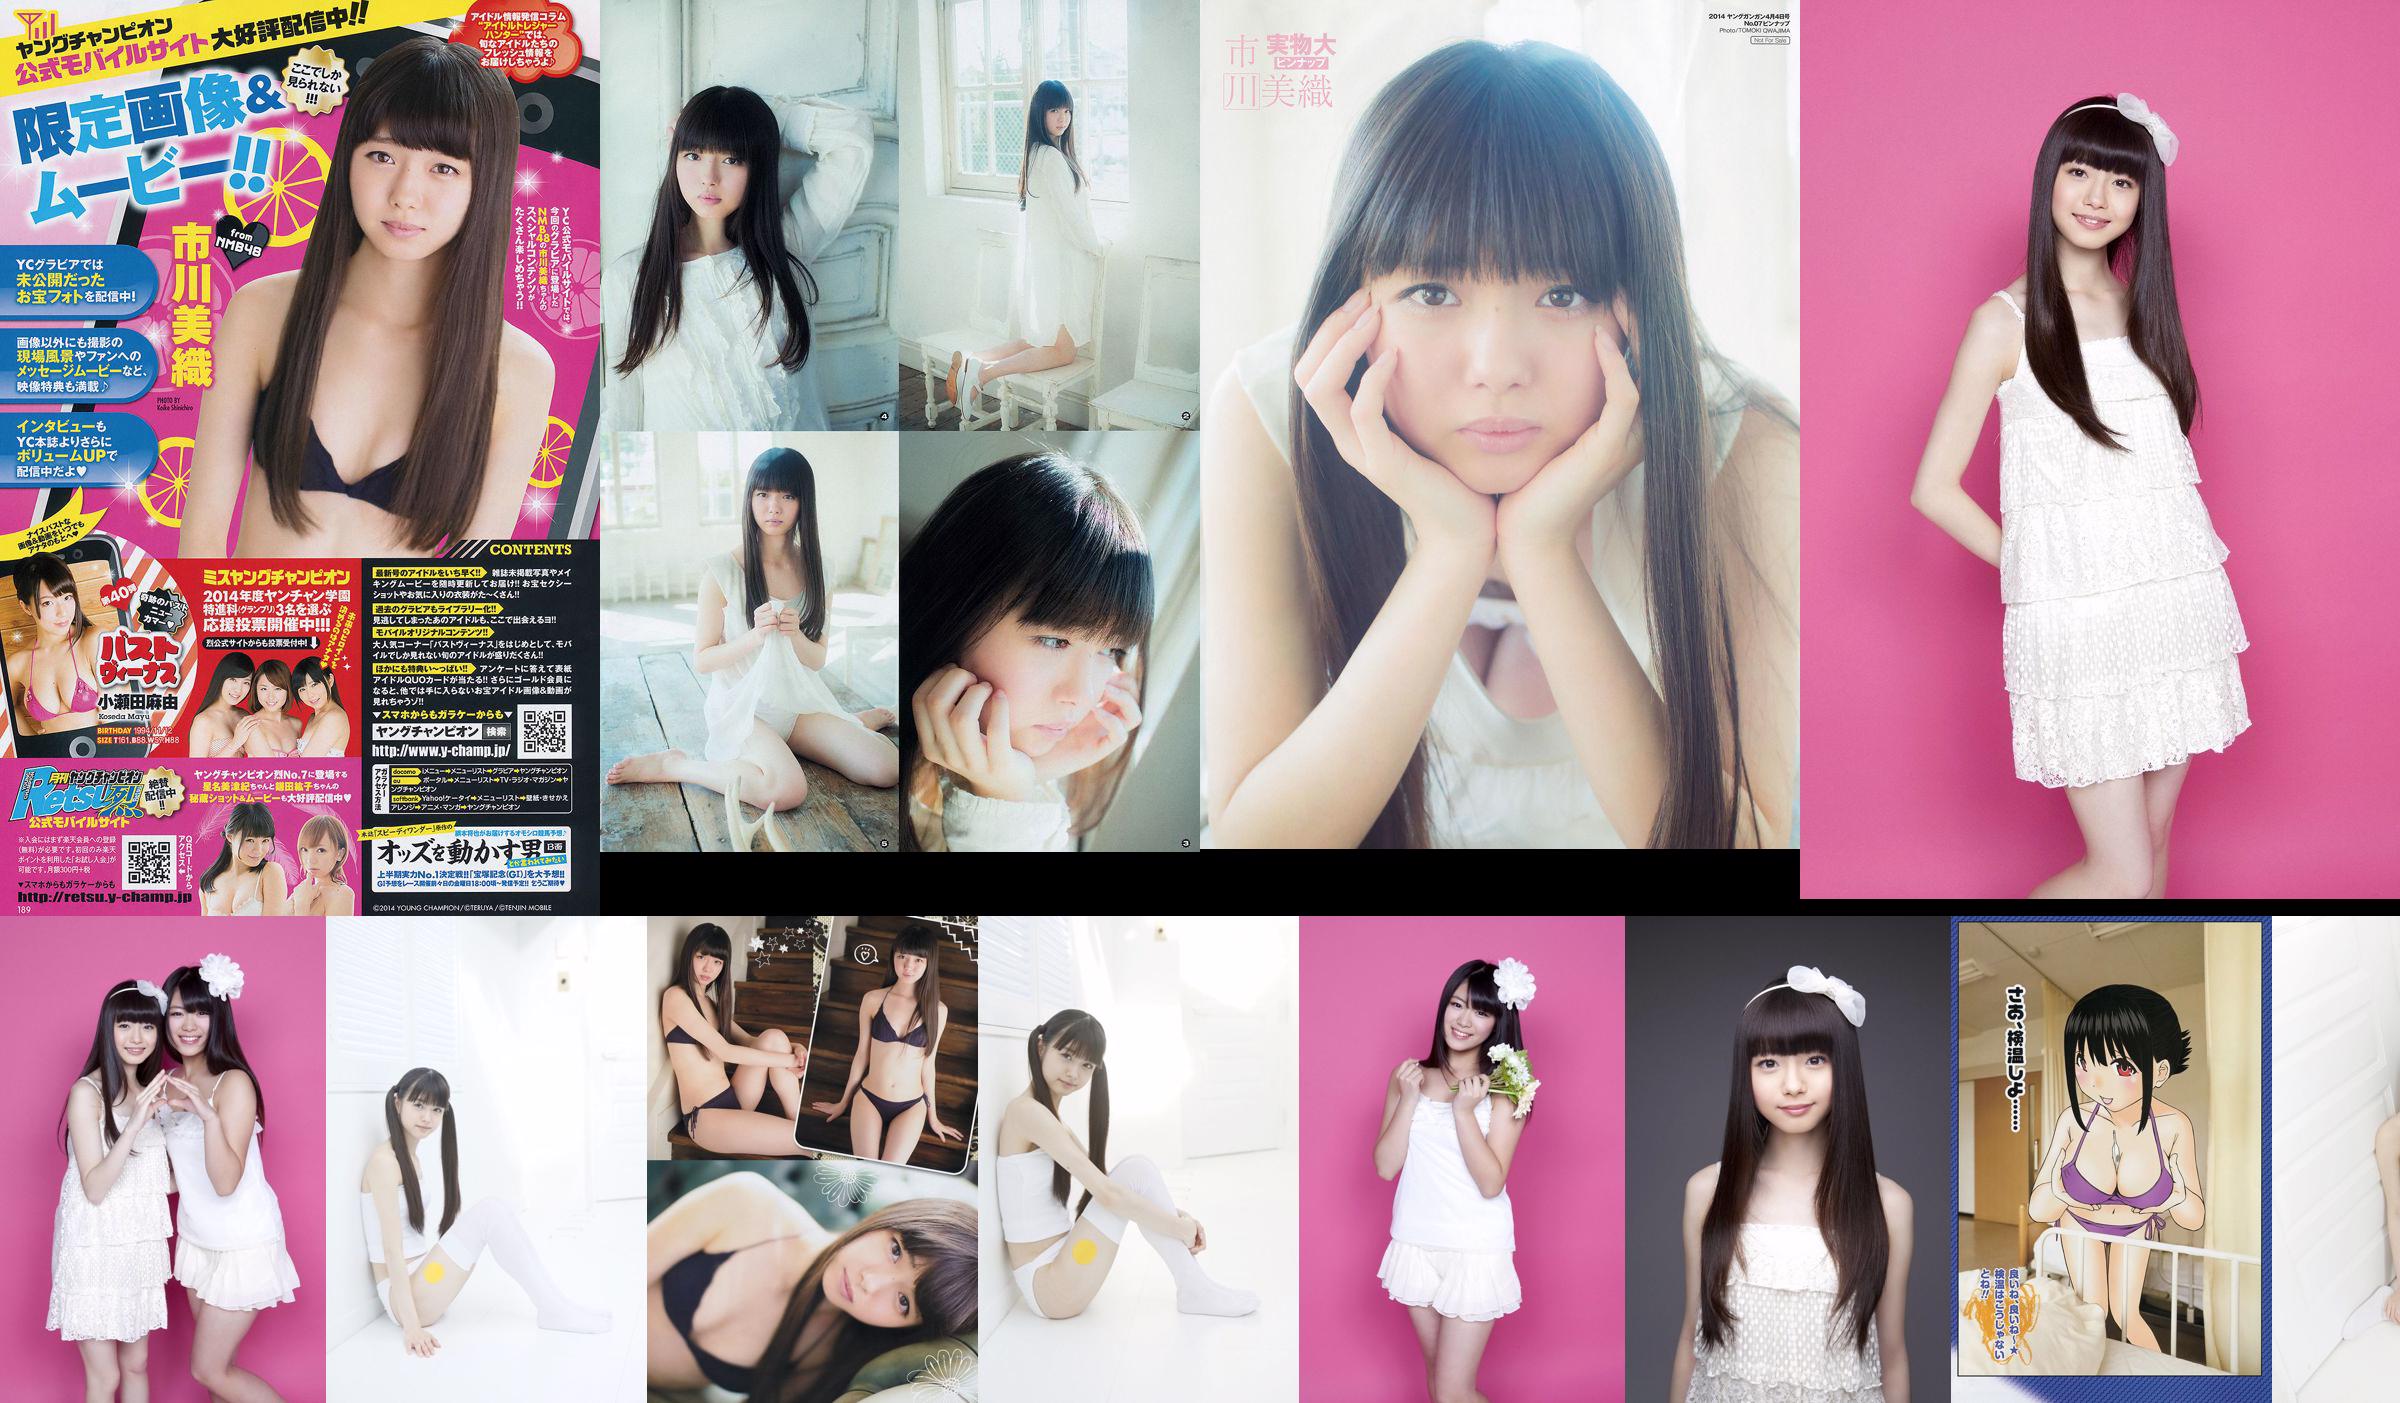 Yamauchi Suzuran/Ichikawa Miori "AKB48ネクストガールズ第2弾" [YS Web] Vol.394 No.868488 Page 5